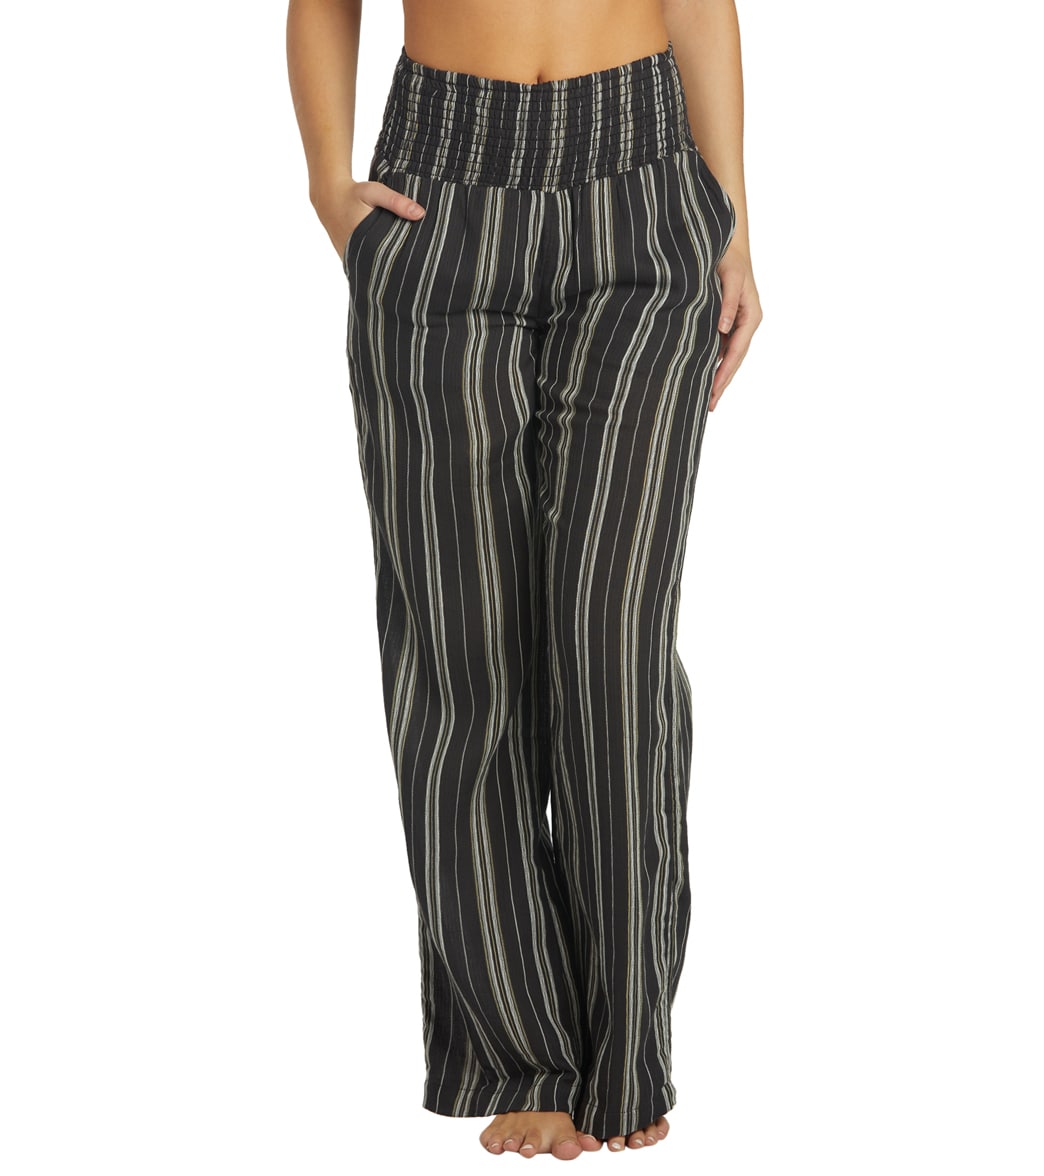 Billabong Women's New Waves Pants - Black 1 Large Cotton - Swimoutlet.com